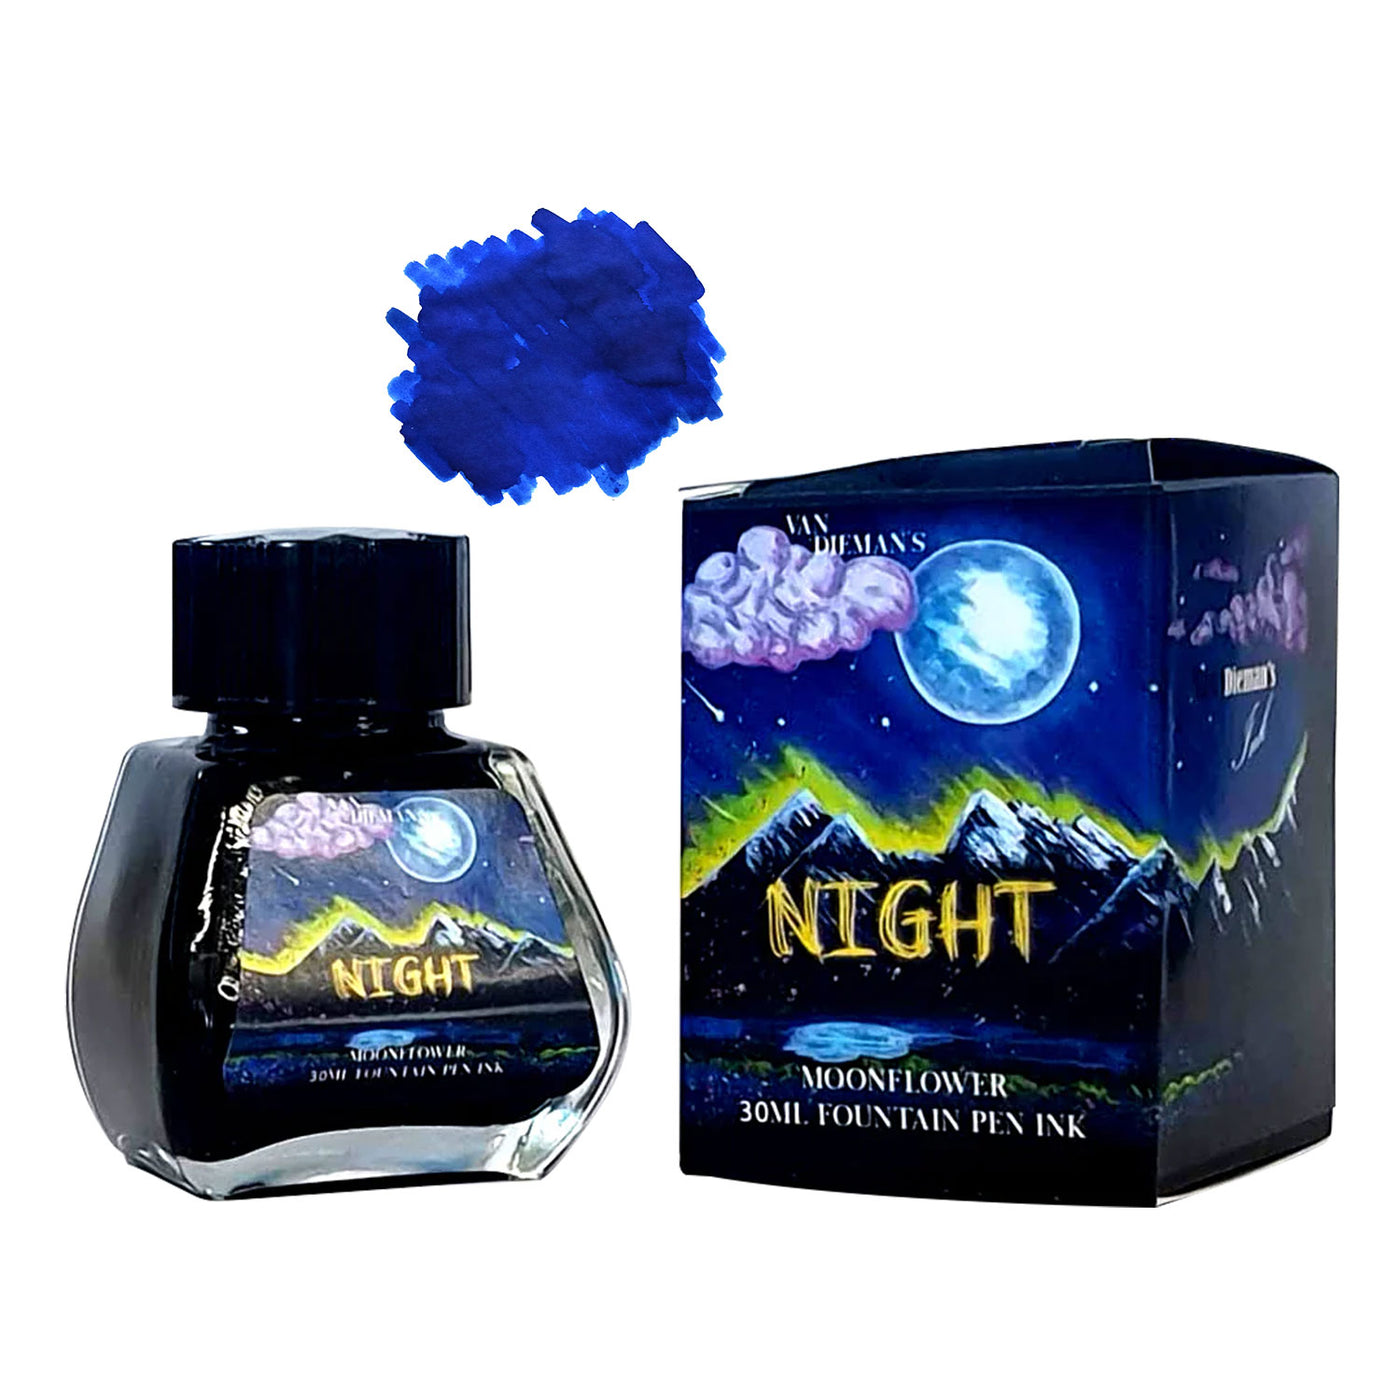 Van Dieman's Night Ink Bottle Moon Flower - 30ml